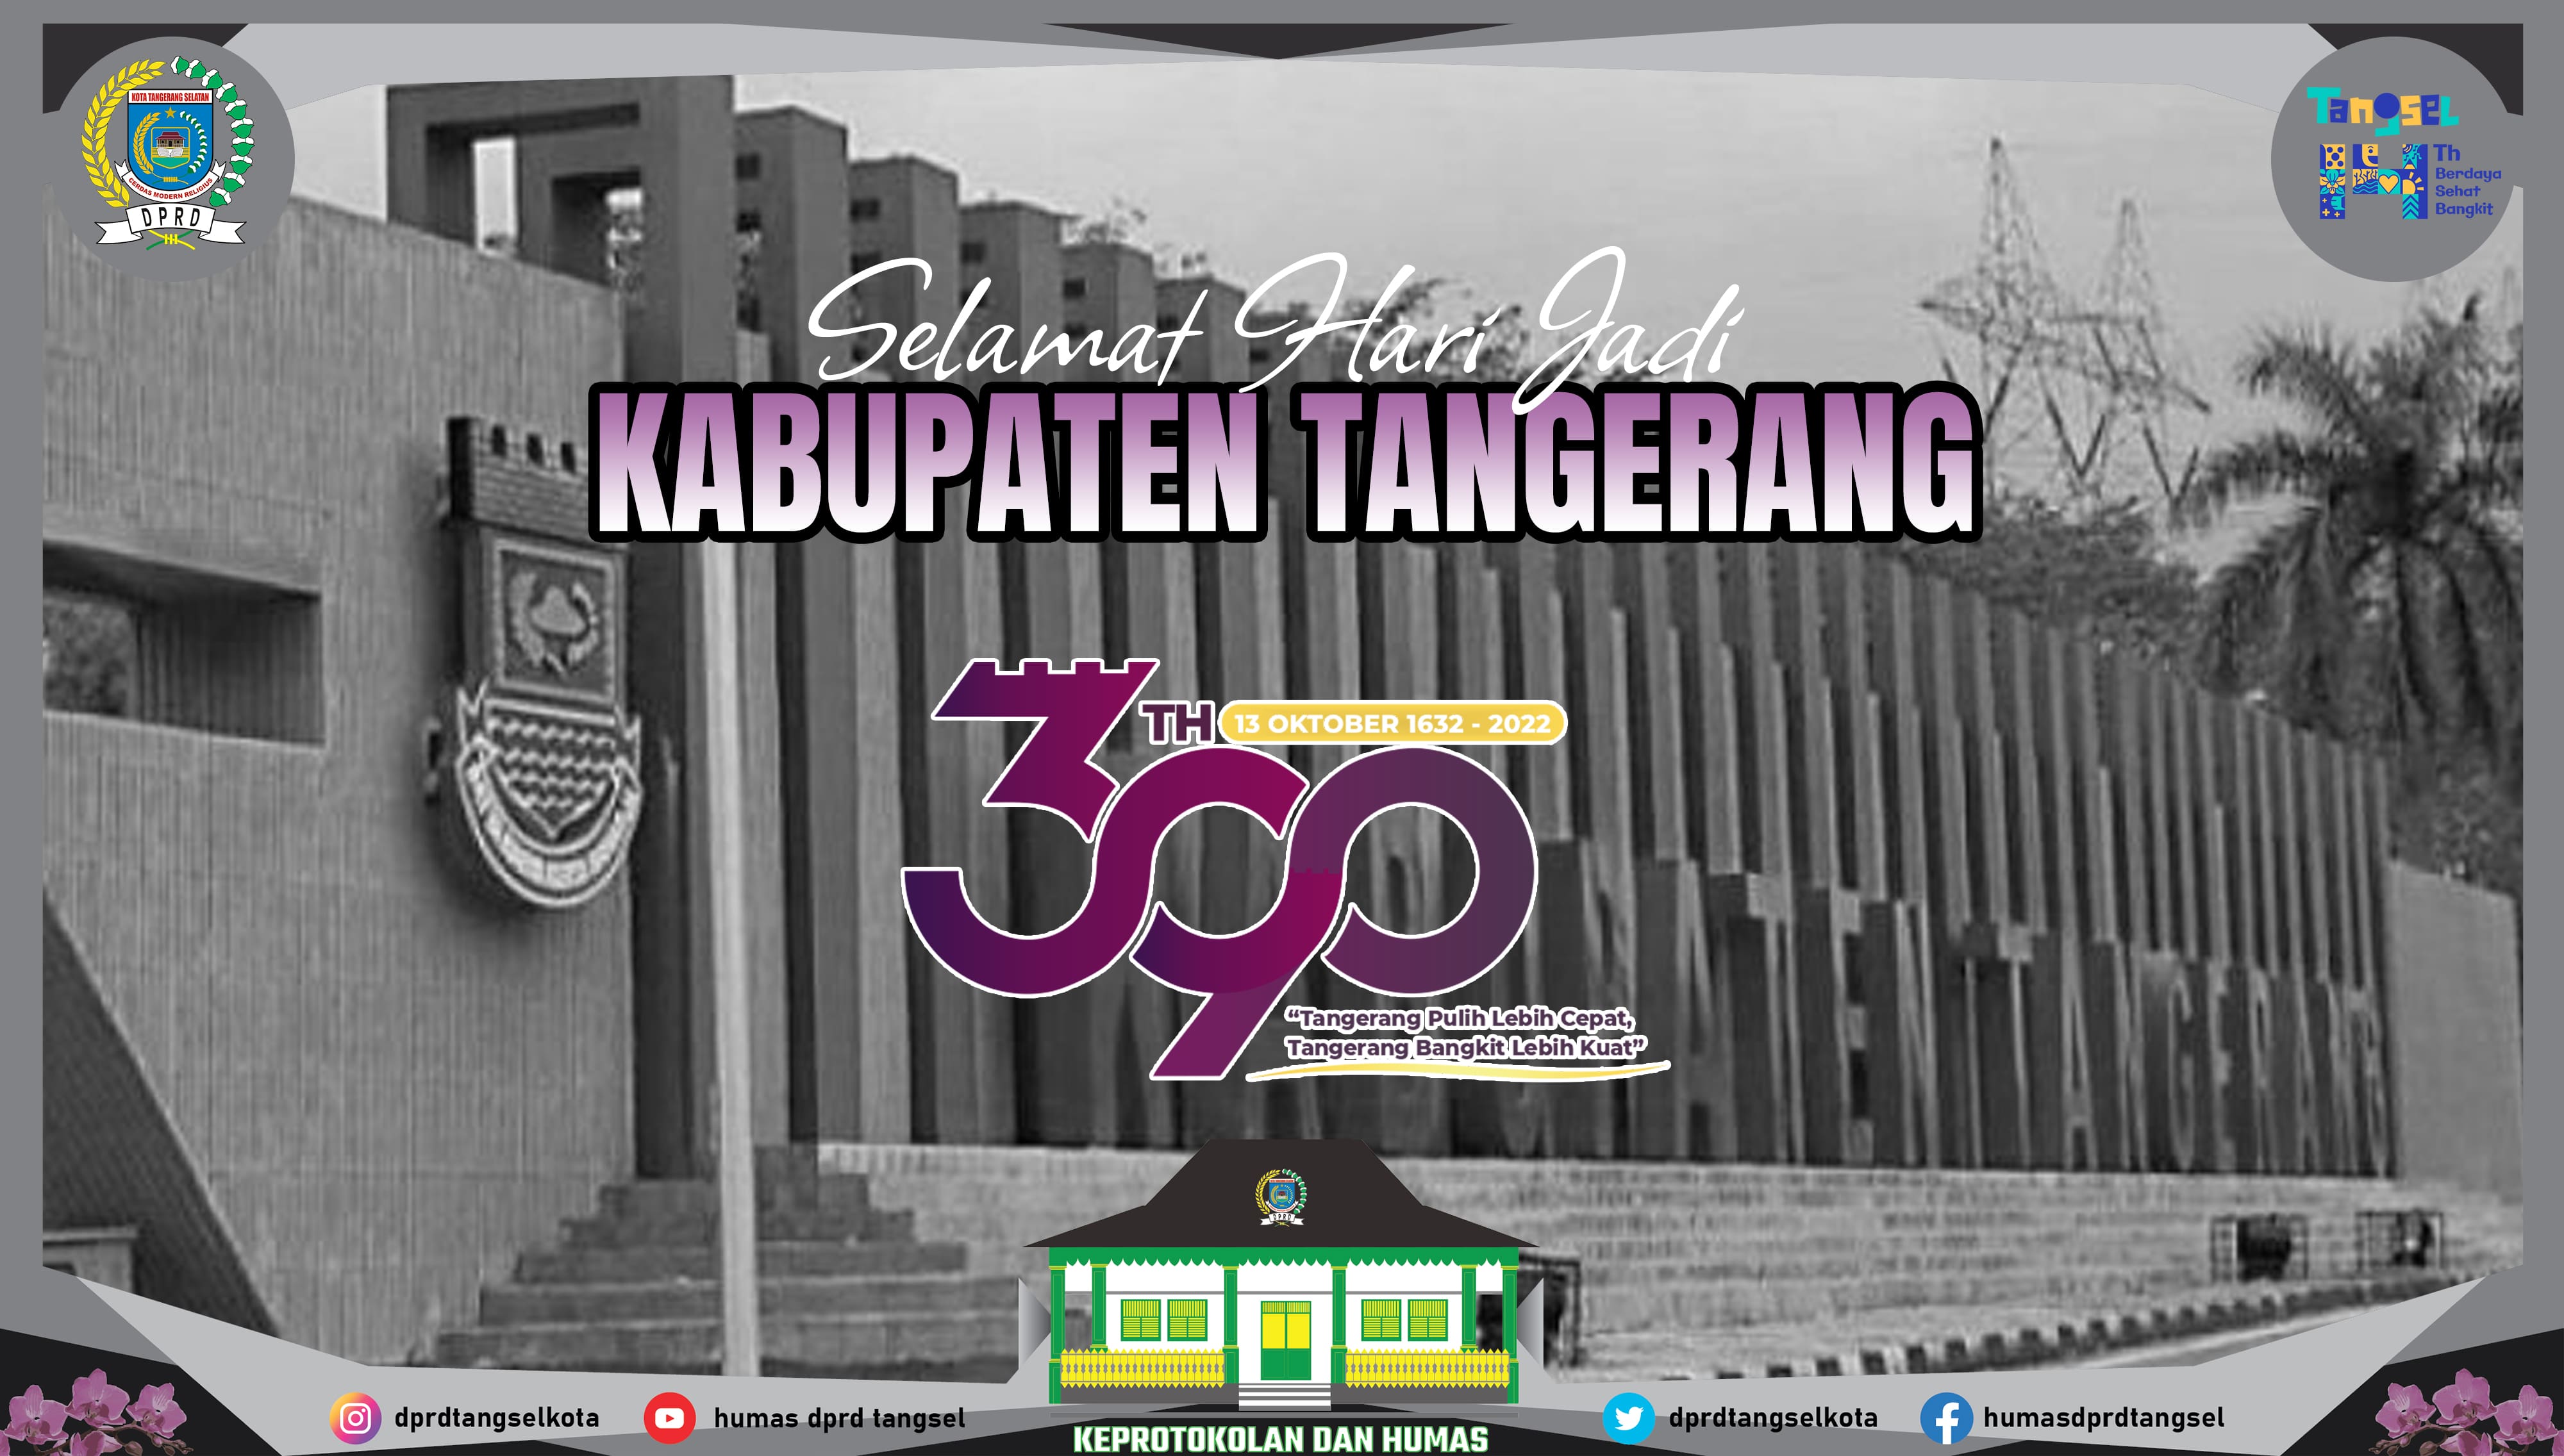 Selamat Hari Jadi Kabupaten Tangerang ke-390 Tahun